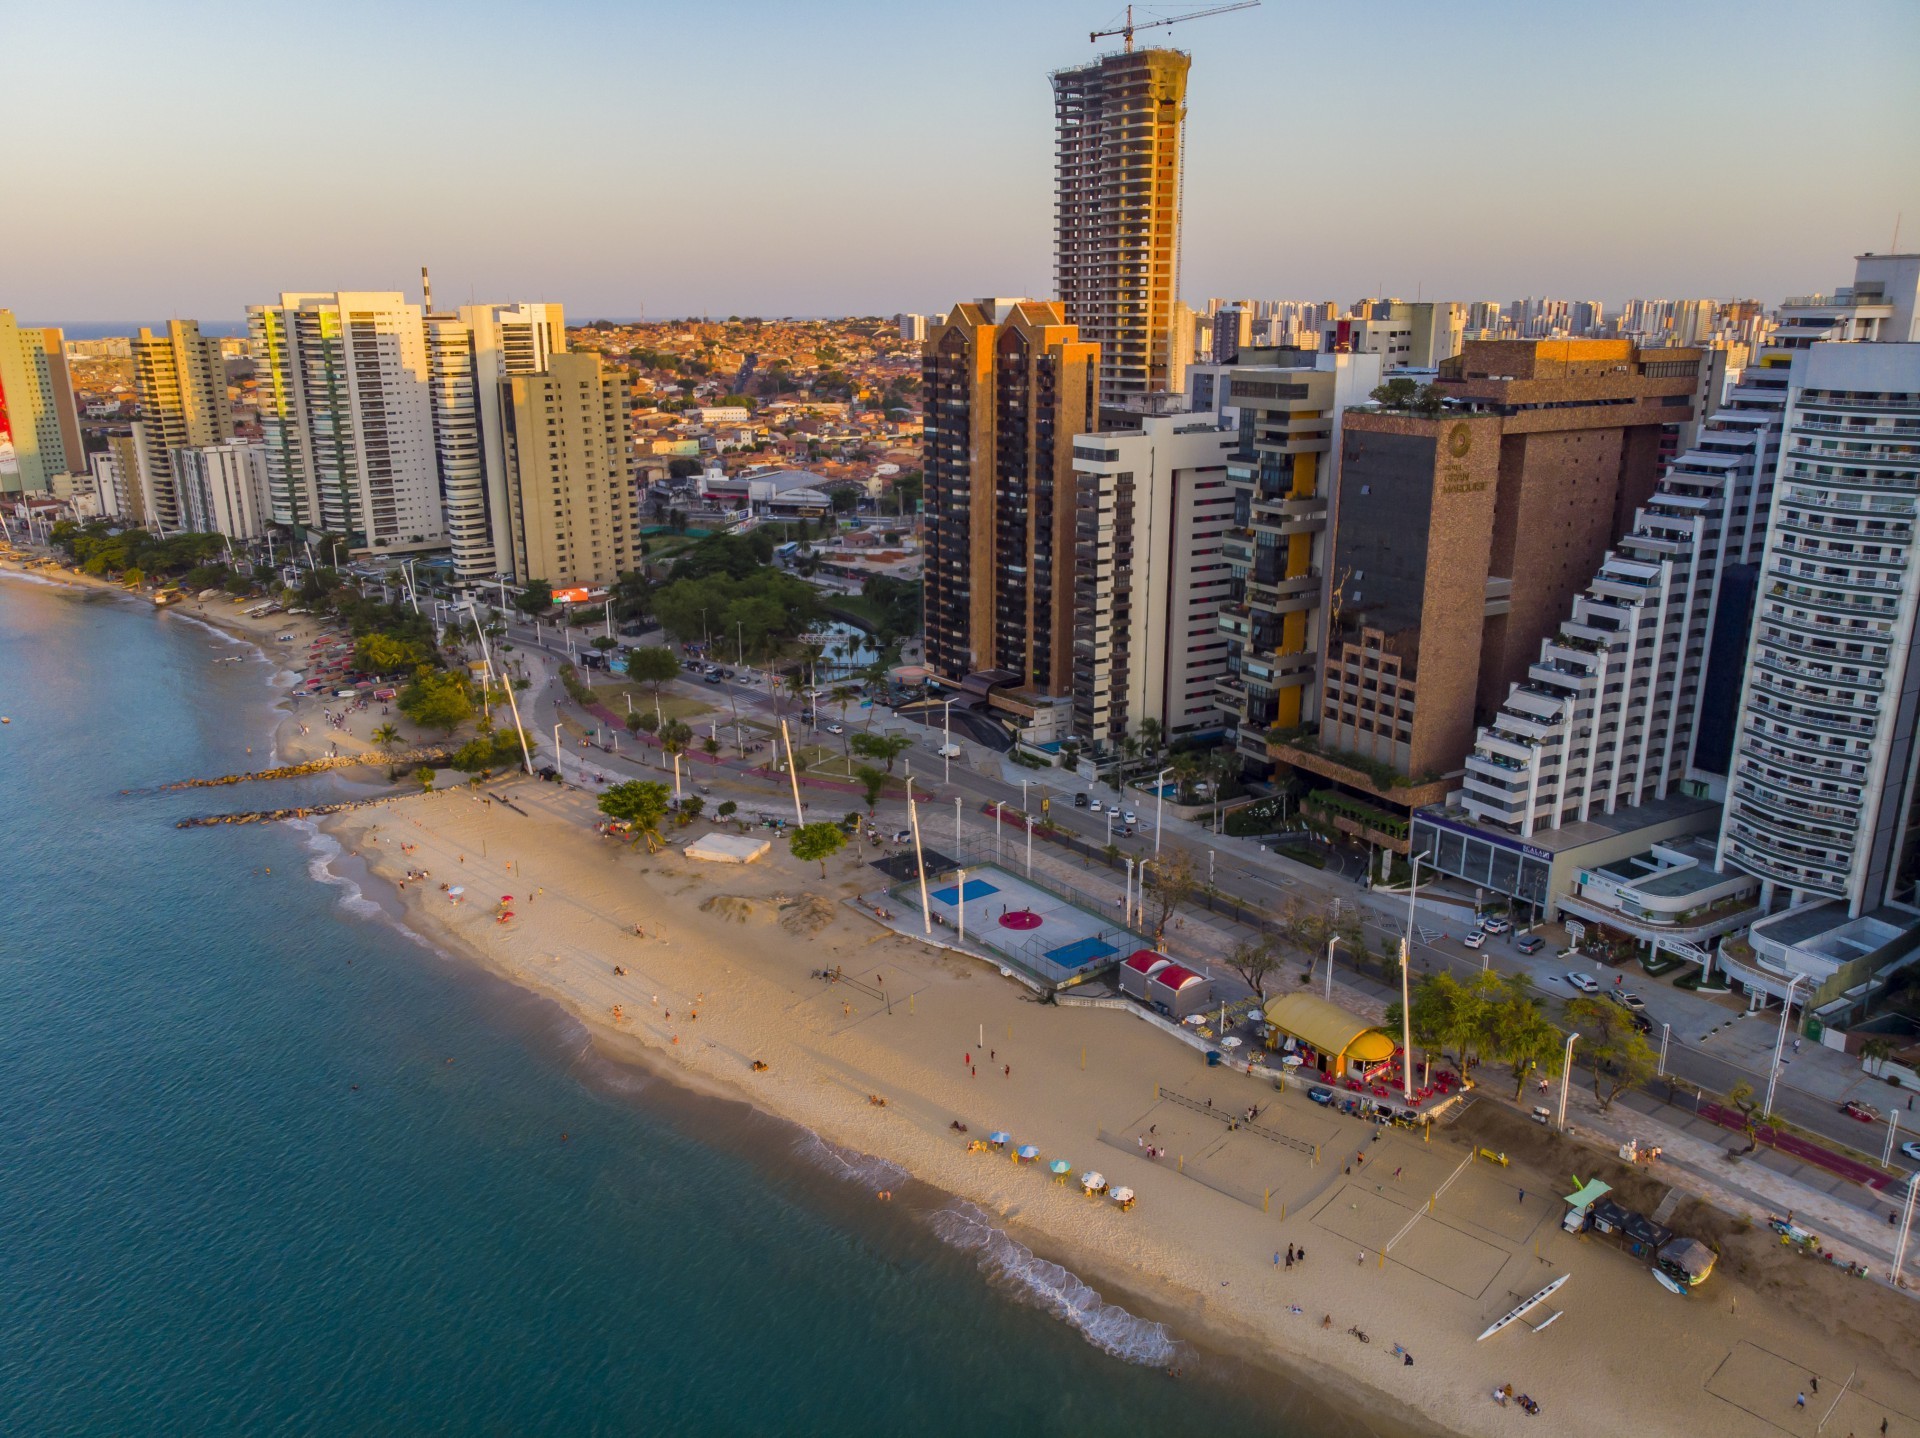 Entre as capitais do Nordeste, apenas Recife e João Pessoa superaram a cidade de Fortaleza em termos de competitividade (Foto: FCO FONTENELE)